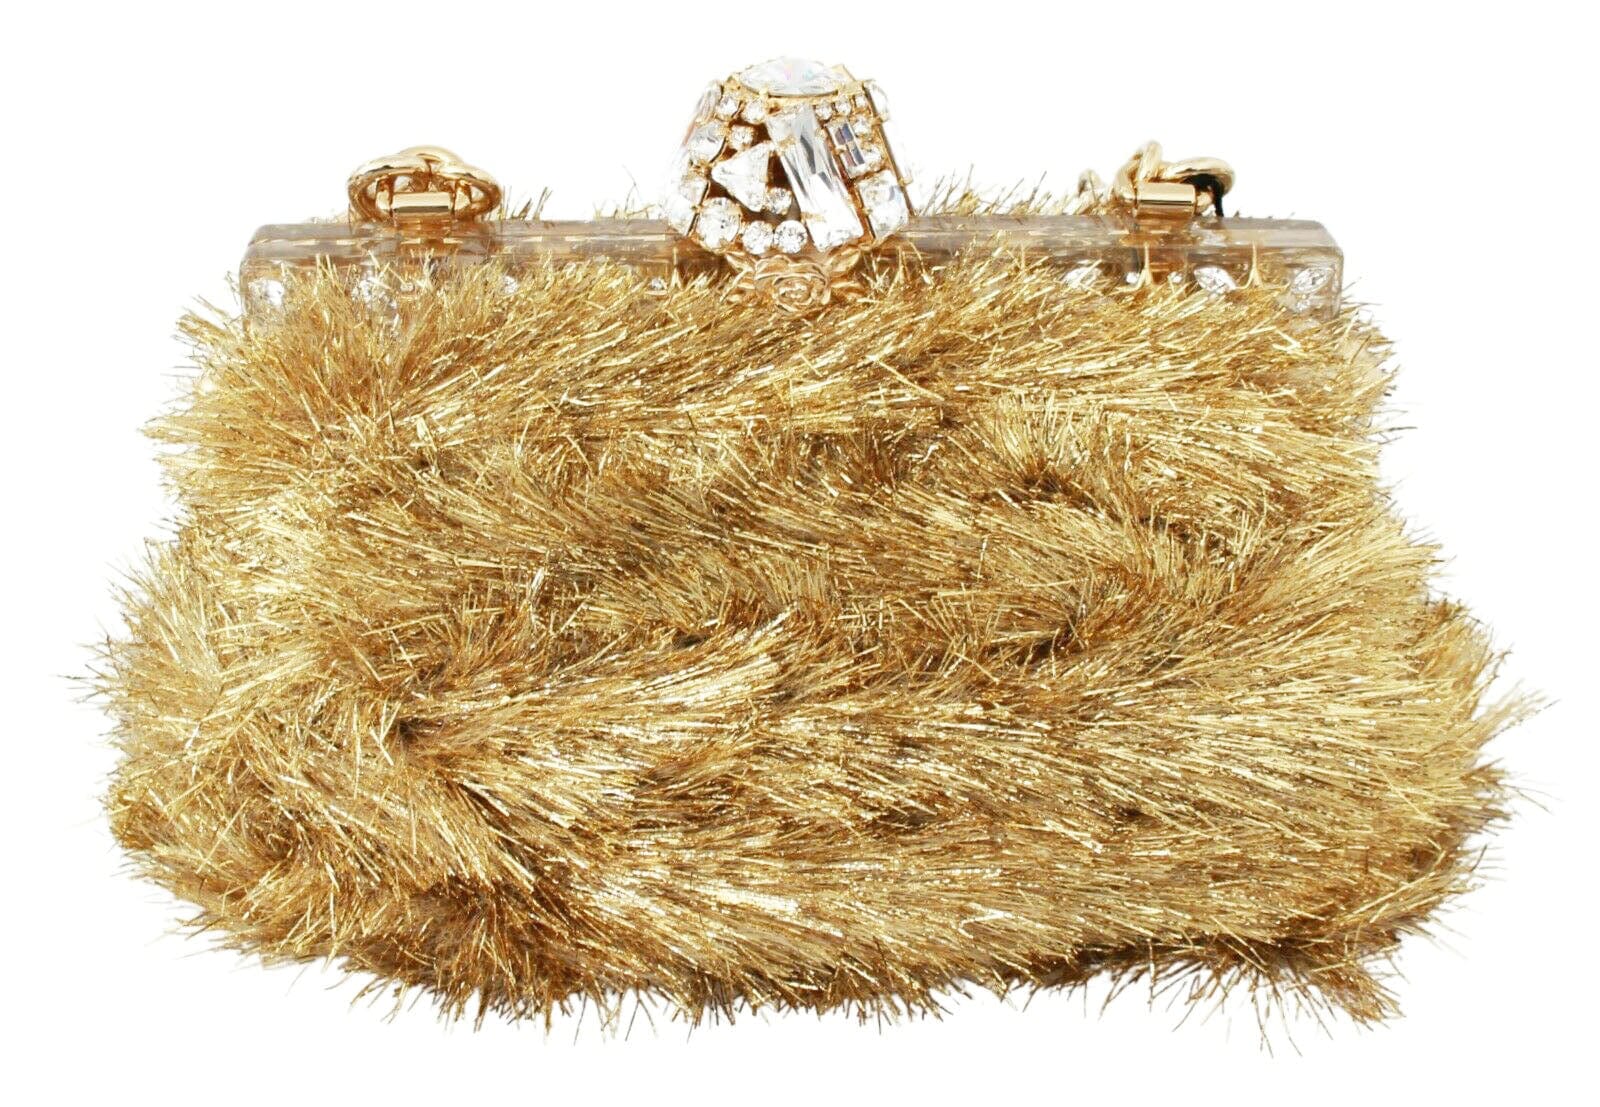 Dolce & Gabbana Vanda Crystal Embellished Top Handle Shoulder Bag